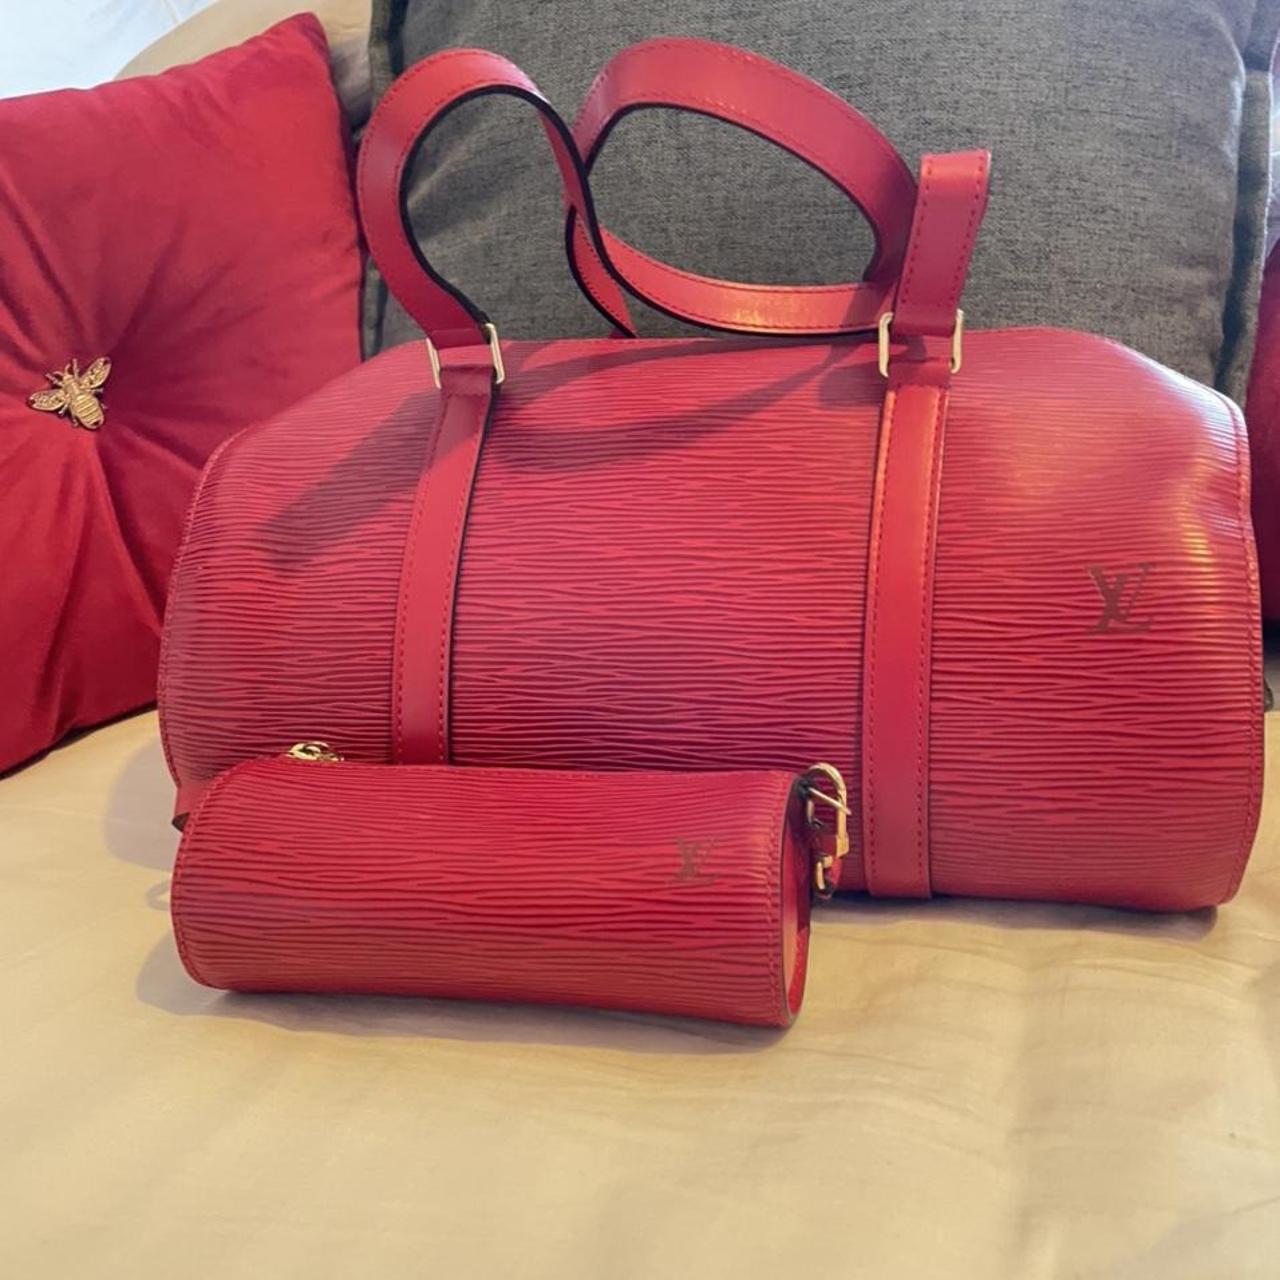 Louis Vuitton Red Epi Leather Soufflot Bag + Mini... - Depop